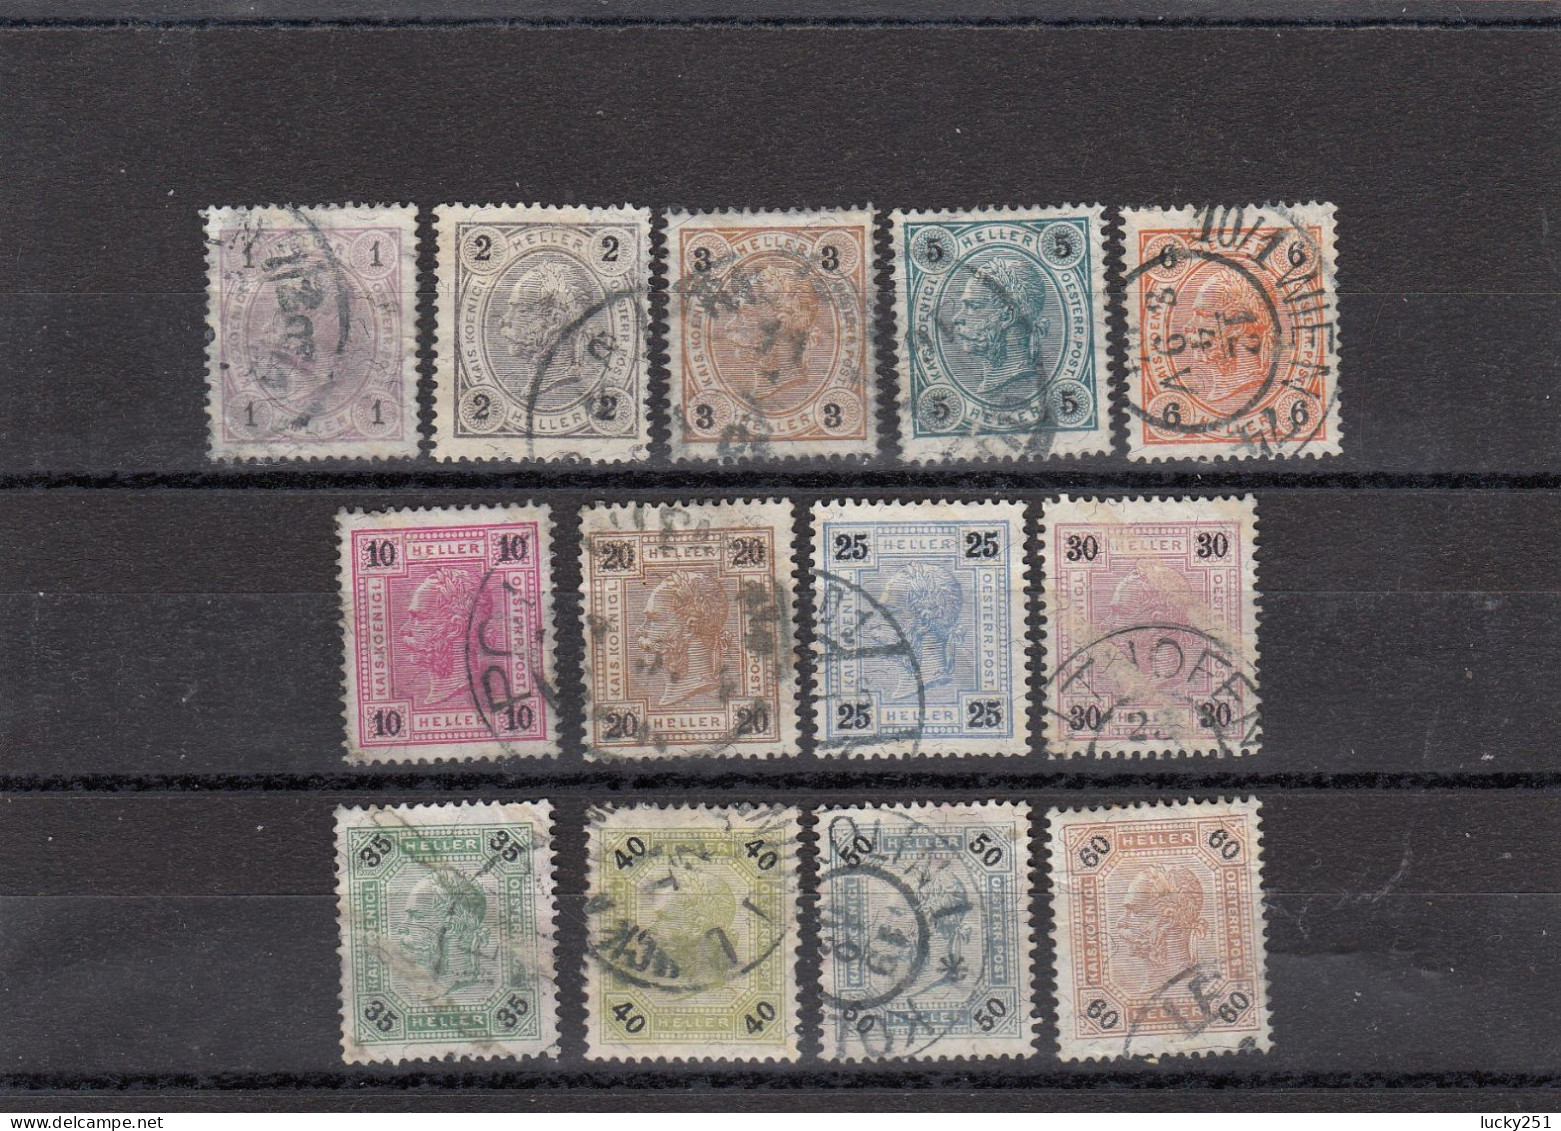 Autriche - Année 1899-1902 - Obl. - Empire - N°YT 65a à76a - Chiffre Noir - Used Stamps